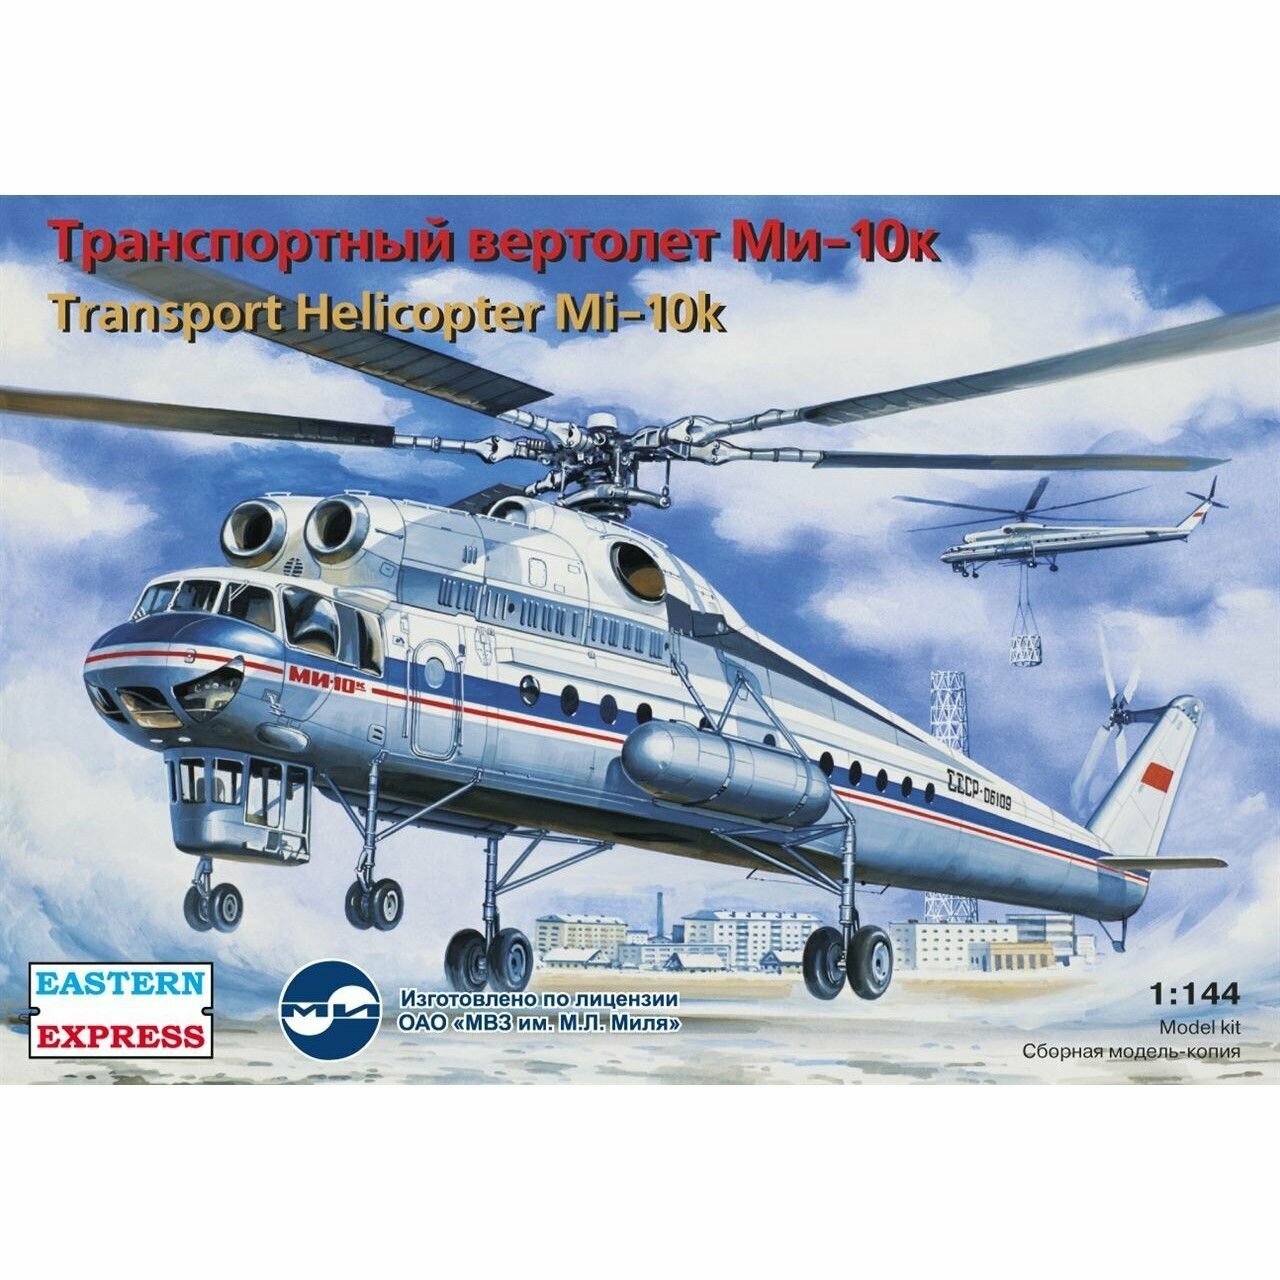 Сборная модель Транспортный вертолет Ми-10К летающий кран, Восточный Экспресс, 1/144